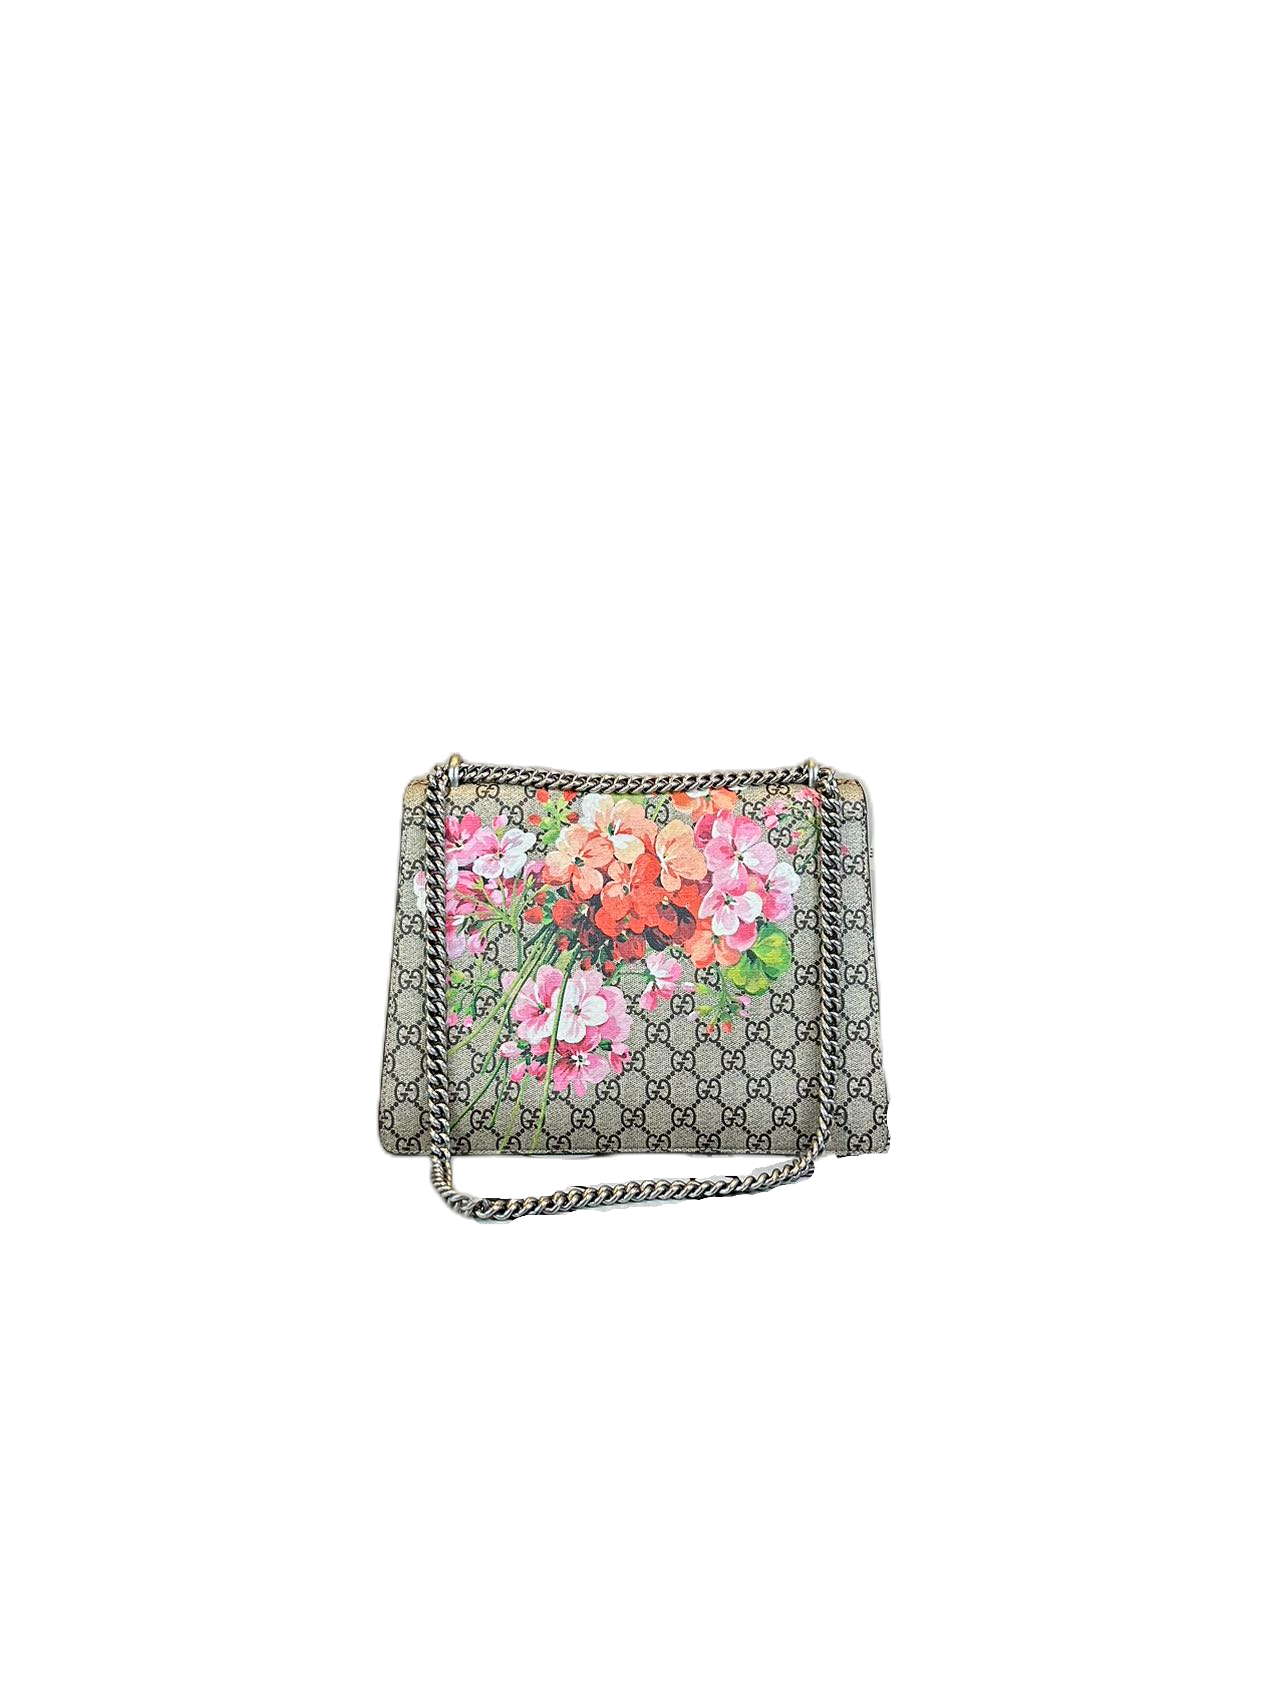 Preloved Gucci GG Logo Supreme Blooms Large Dionysus Shoulder Bag